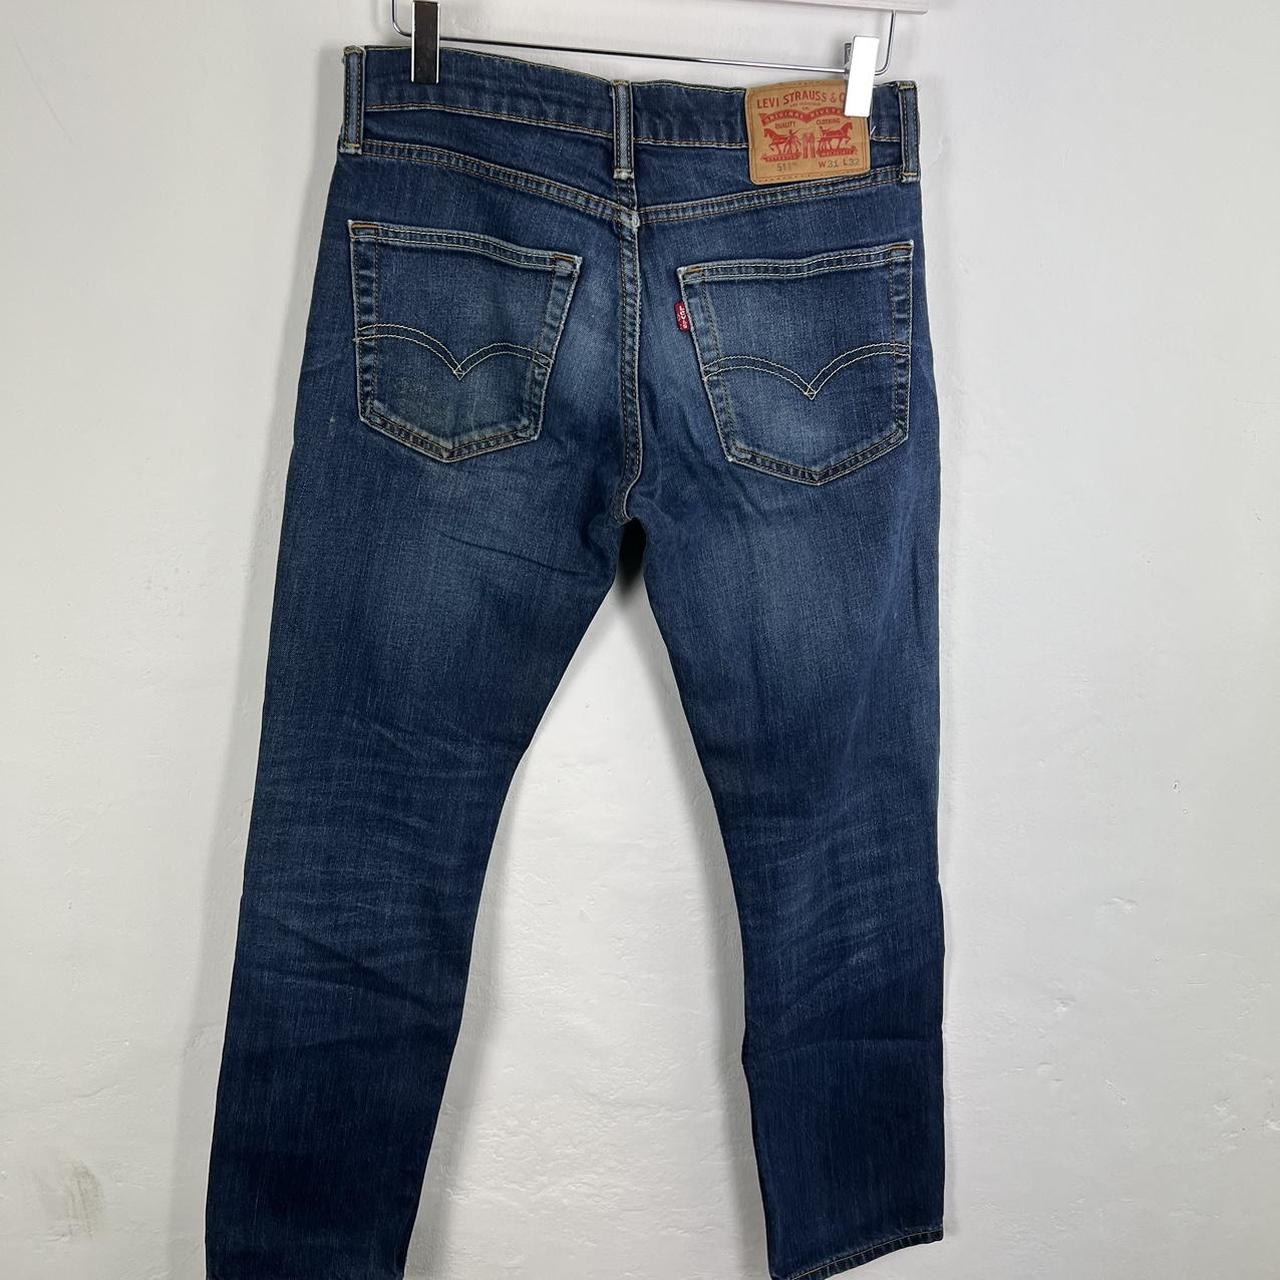 Levi’s 511 jeans 31x32